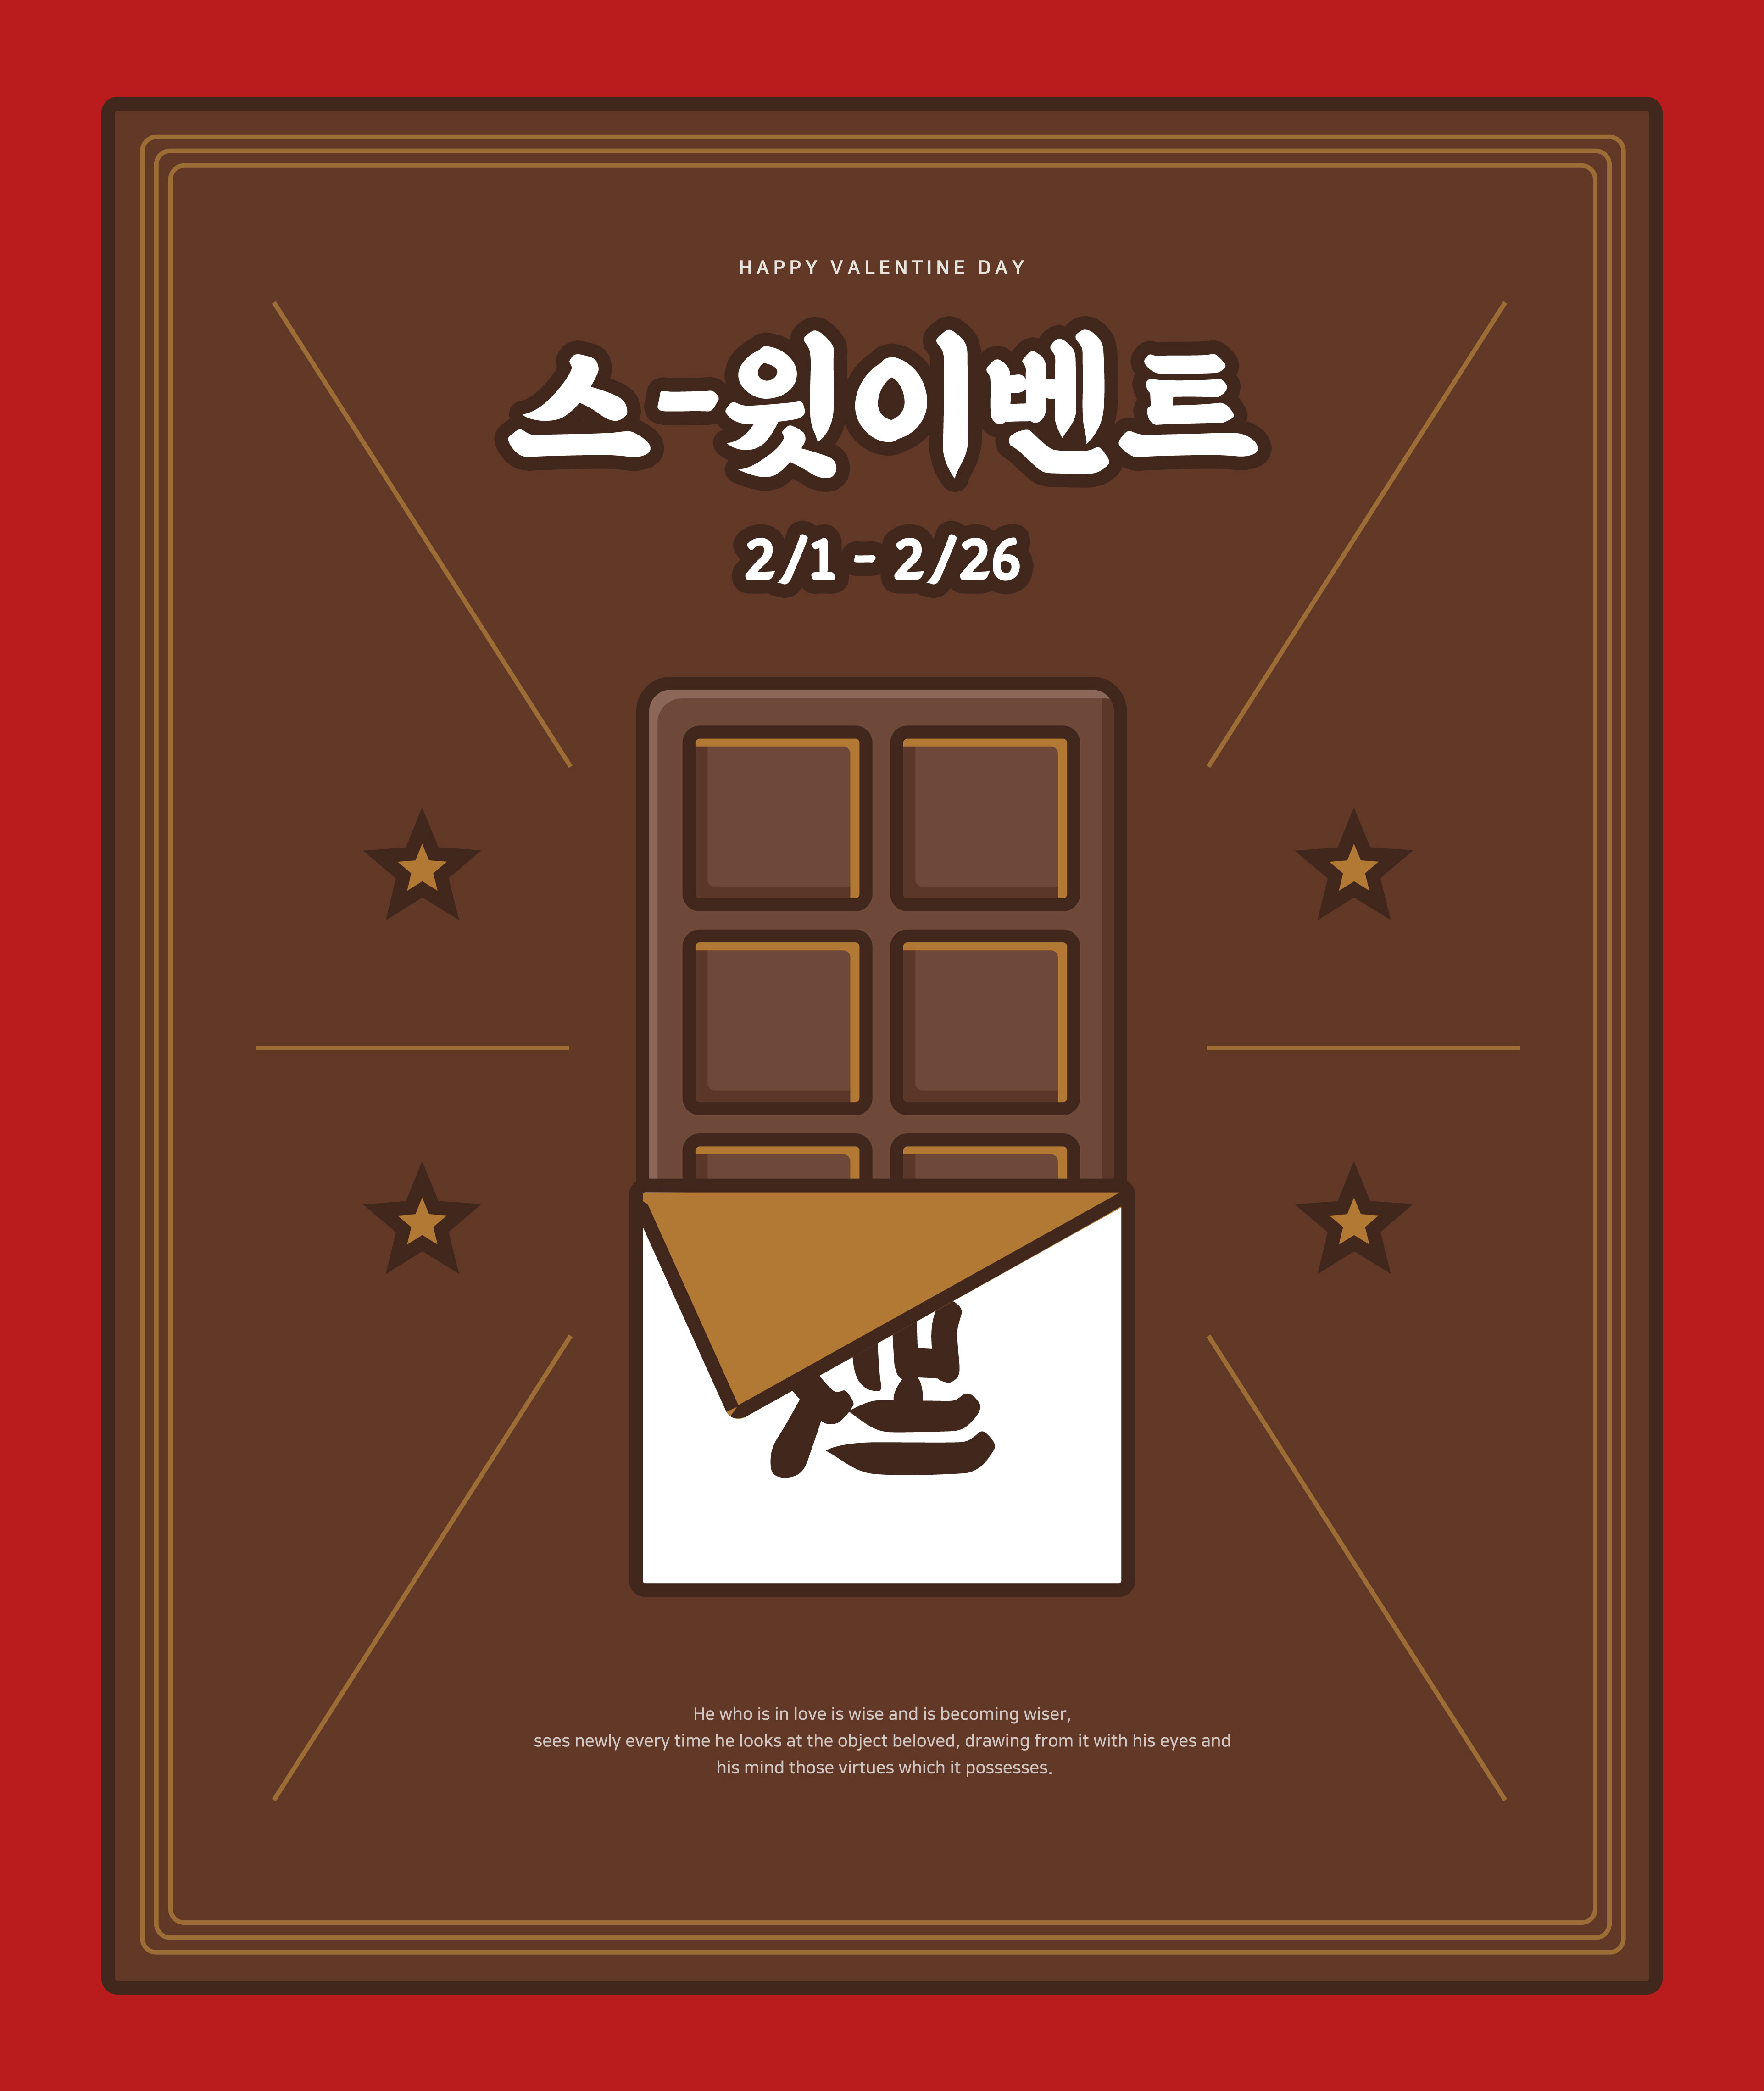 巧克力食品促销海报PSD素材素材库精选韩国素材插图